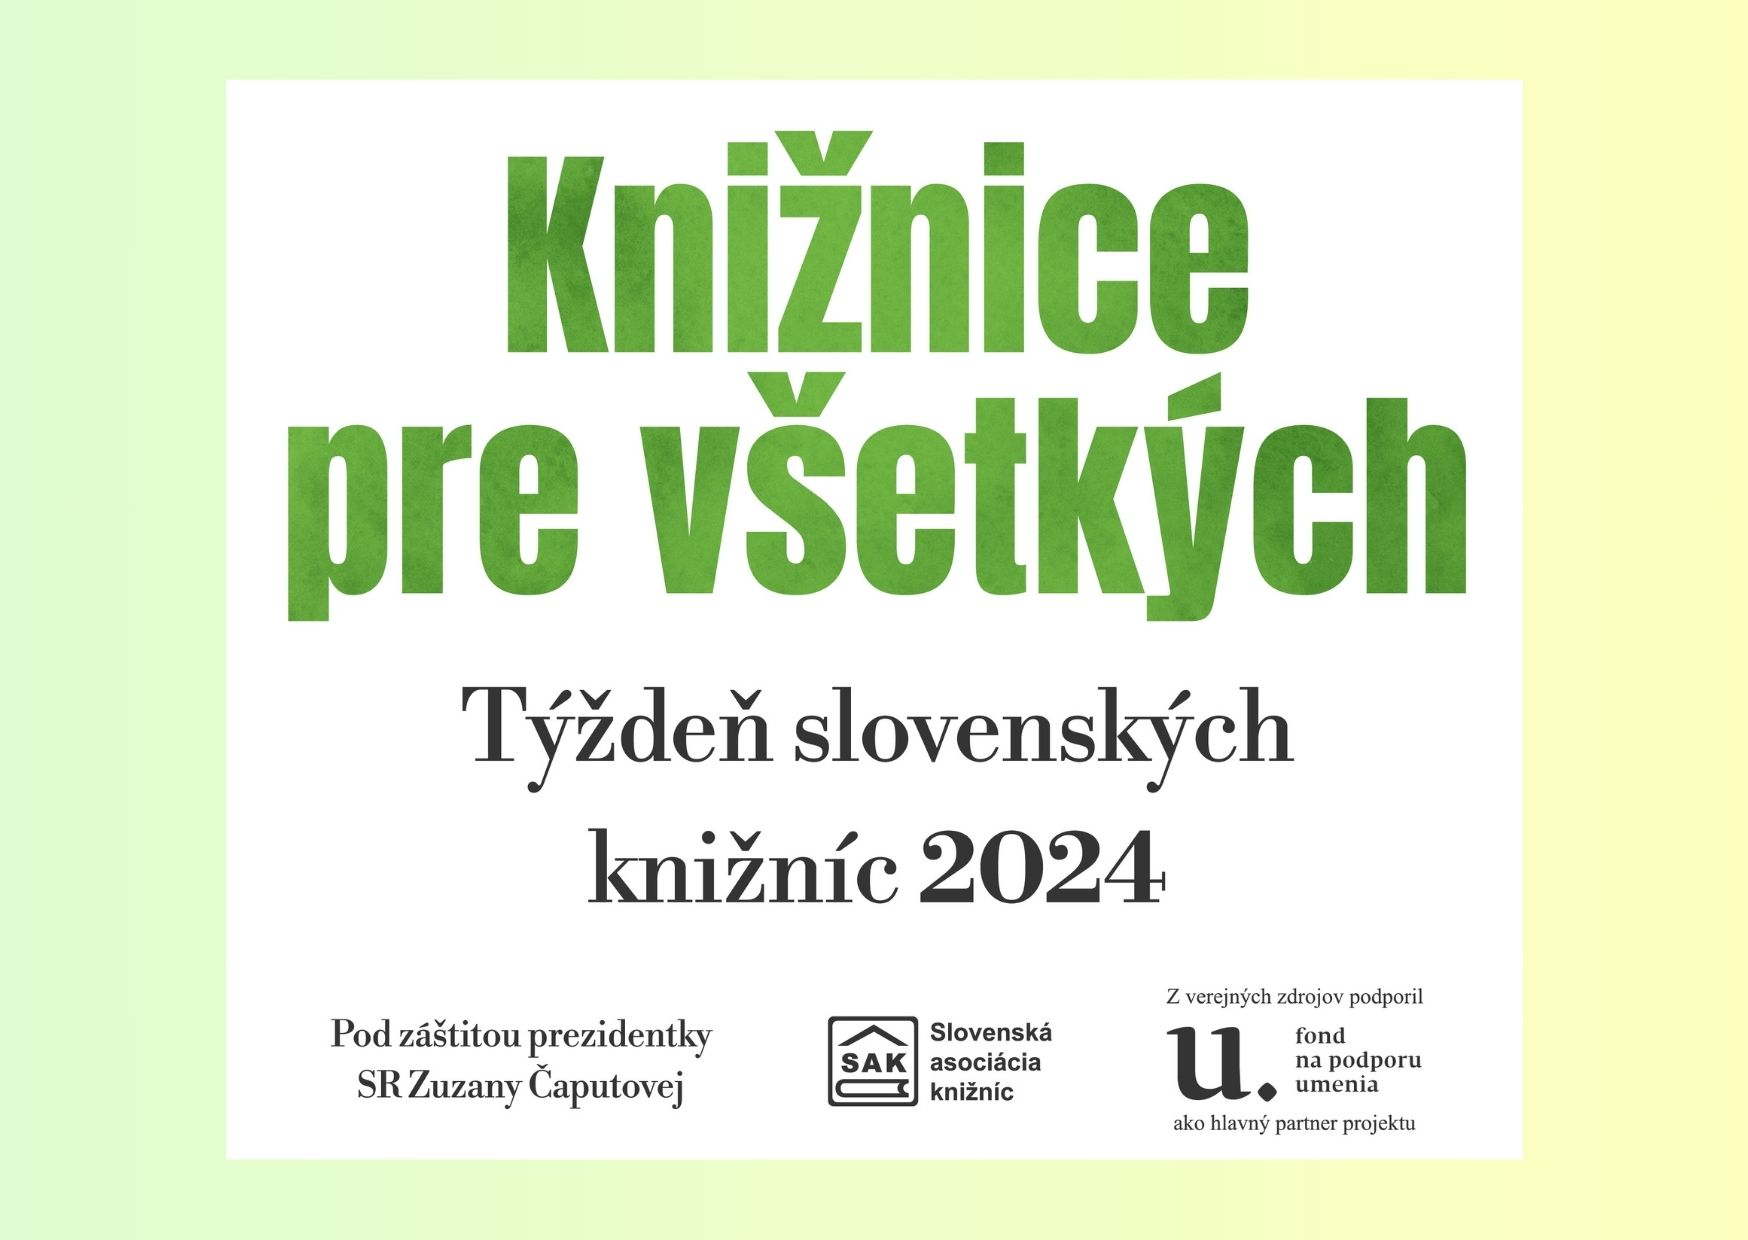 Týždeň slovenských knižníc 2024: Knižnice pre všetkých